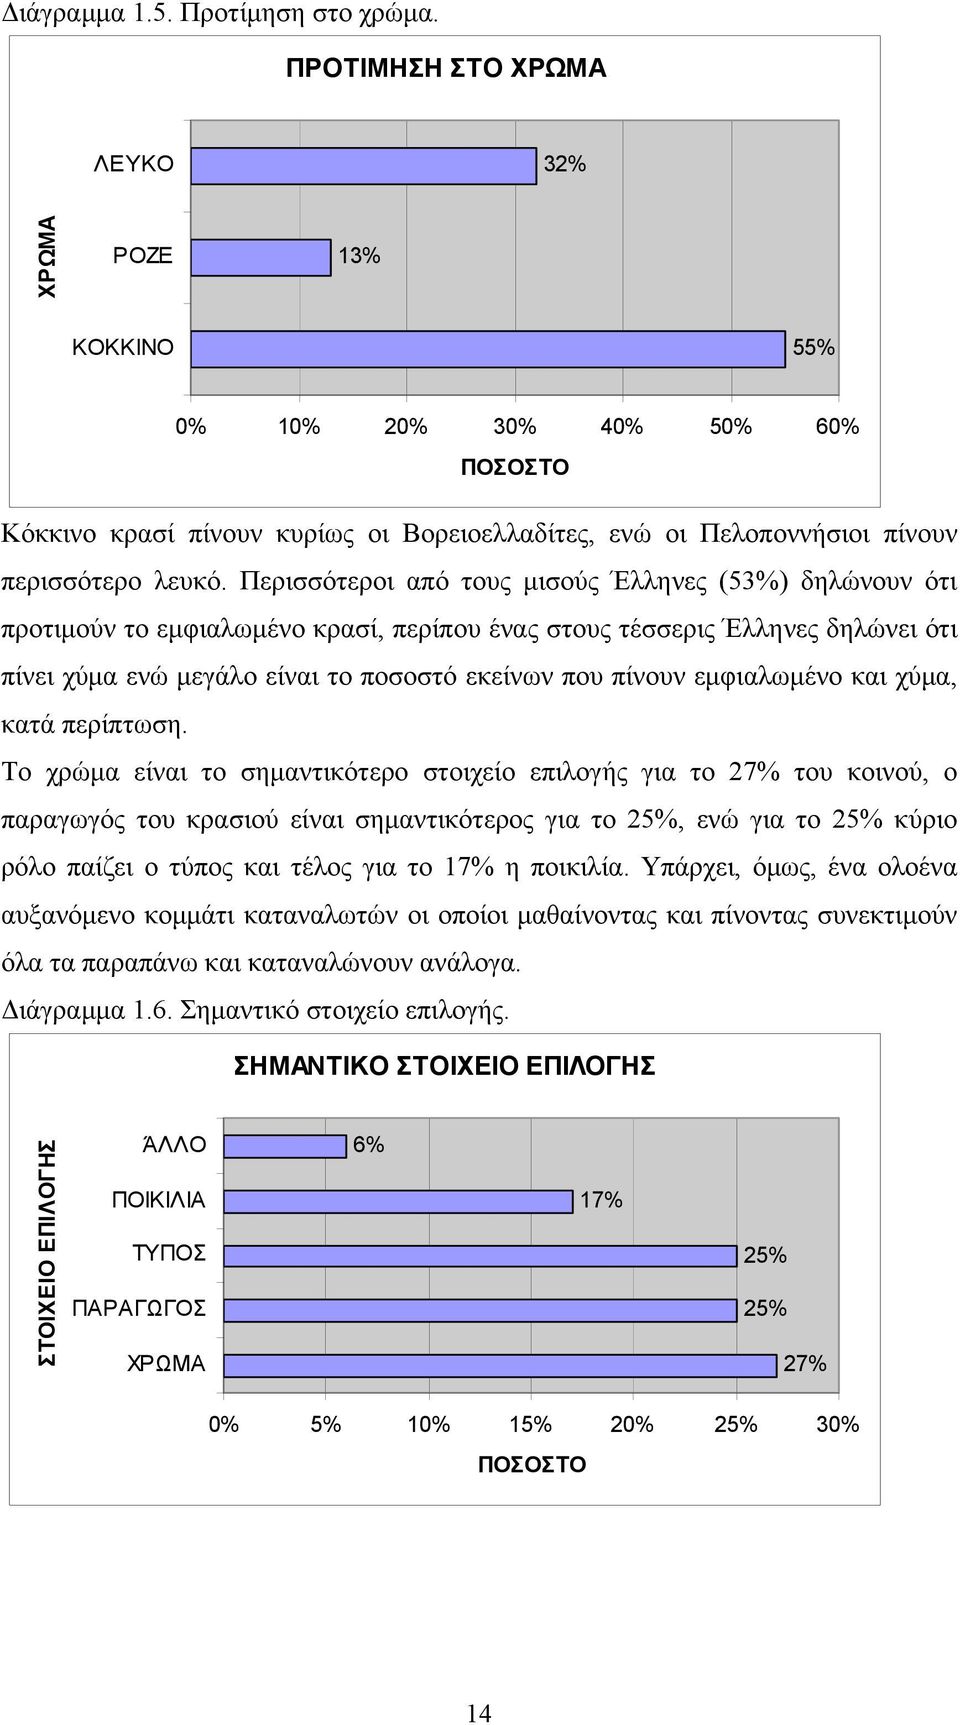 Περισσότεροι από τους μισούς Έλληνες (53%) δηλώνουν ότι προτιμούν το εμφιαλωμένο κρασί, περίπου ένας στους τέσσερις Έλληνες δηλώνει ότι πίνει χύμα ενώ μεγάλο είναι το ποσοστό εκείνων που πίνουν